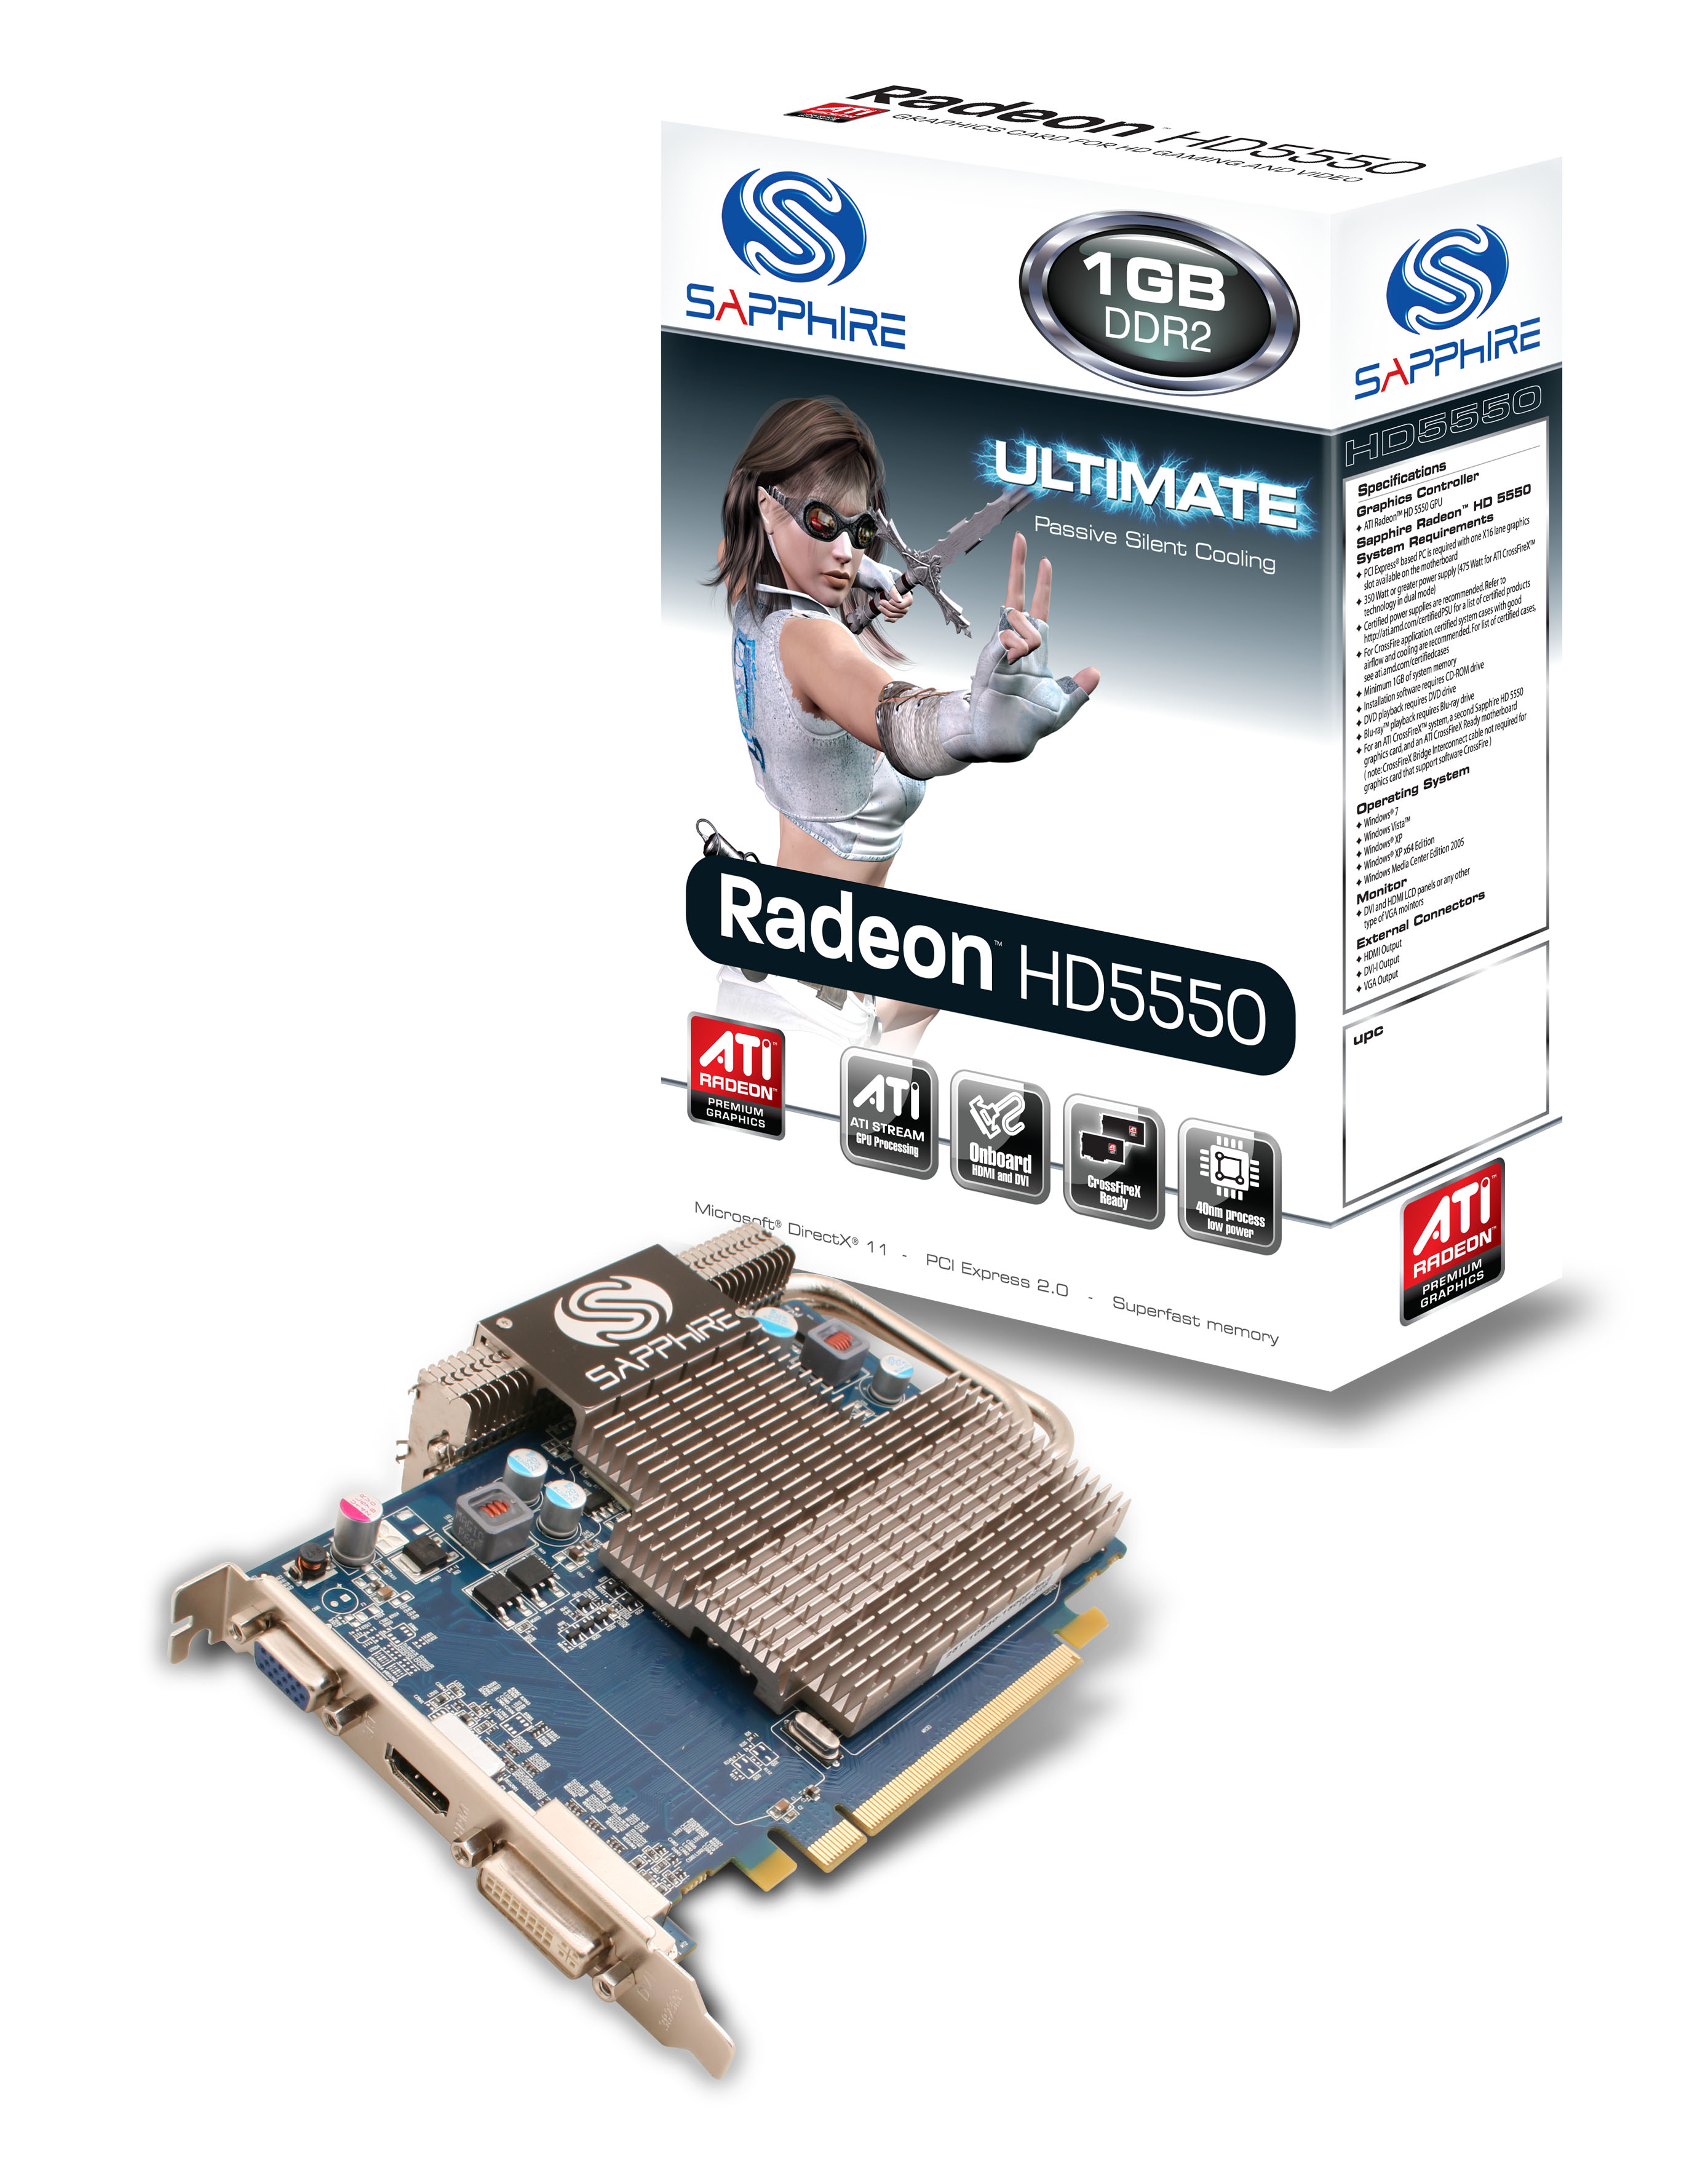 Immagine pubblicata in relazione al seguente contenuto: SAPPHIRE lancia la video card Radeon HD5550 ULTIMATE | Nome immagine: news13068_1.jpg